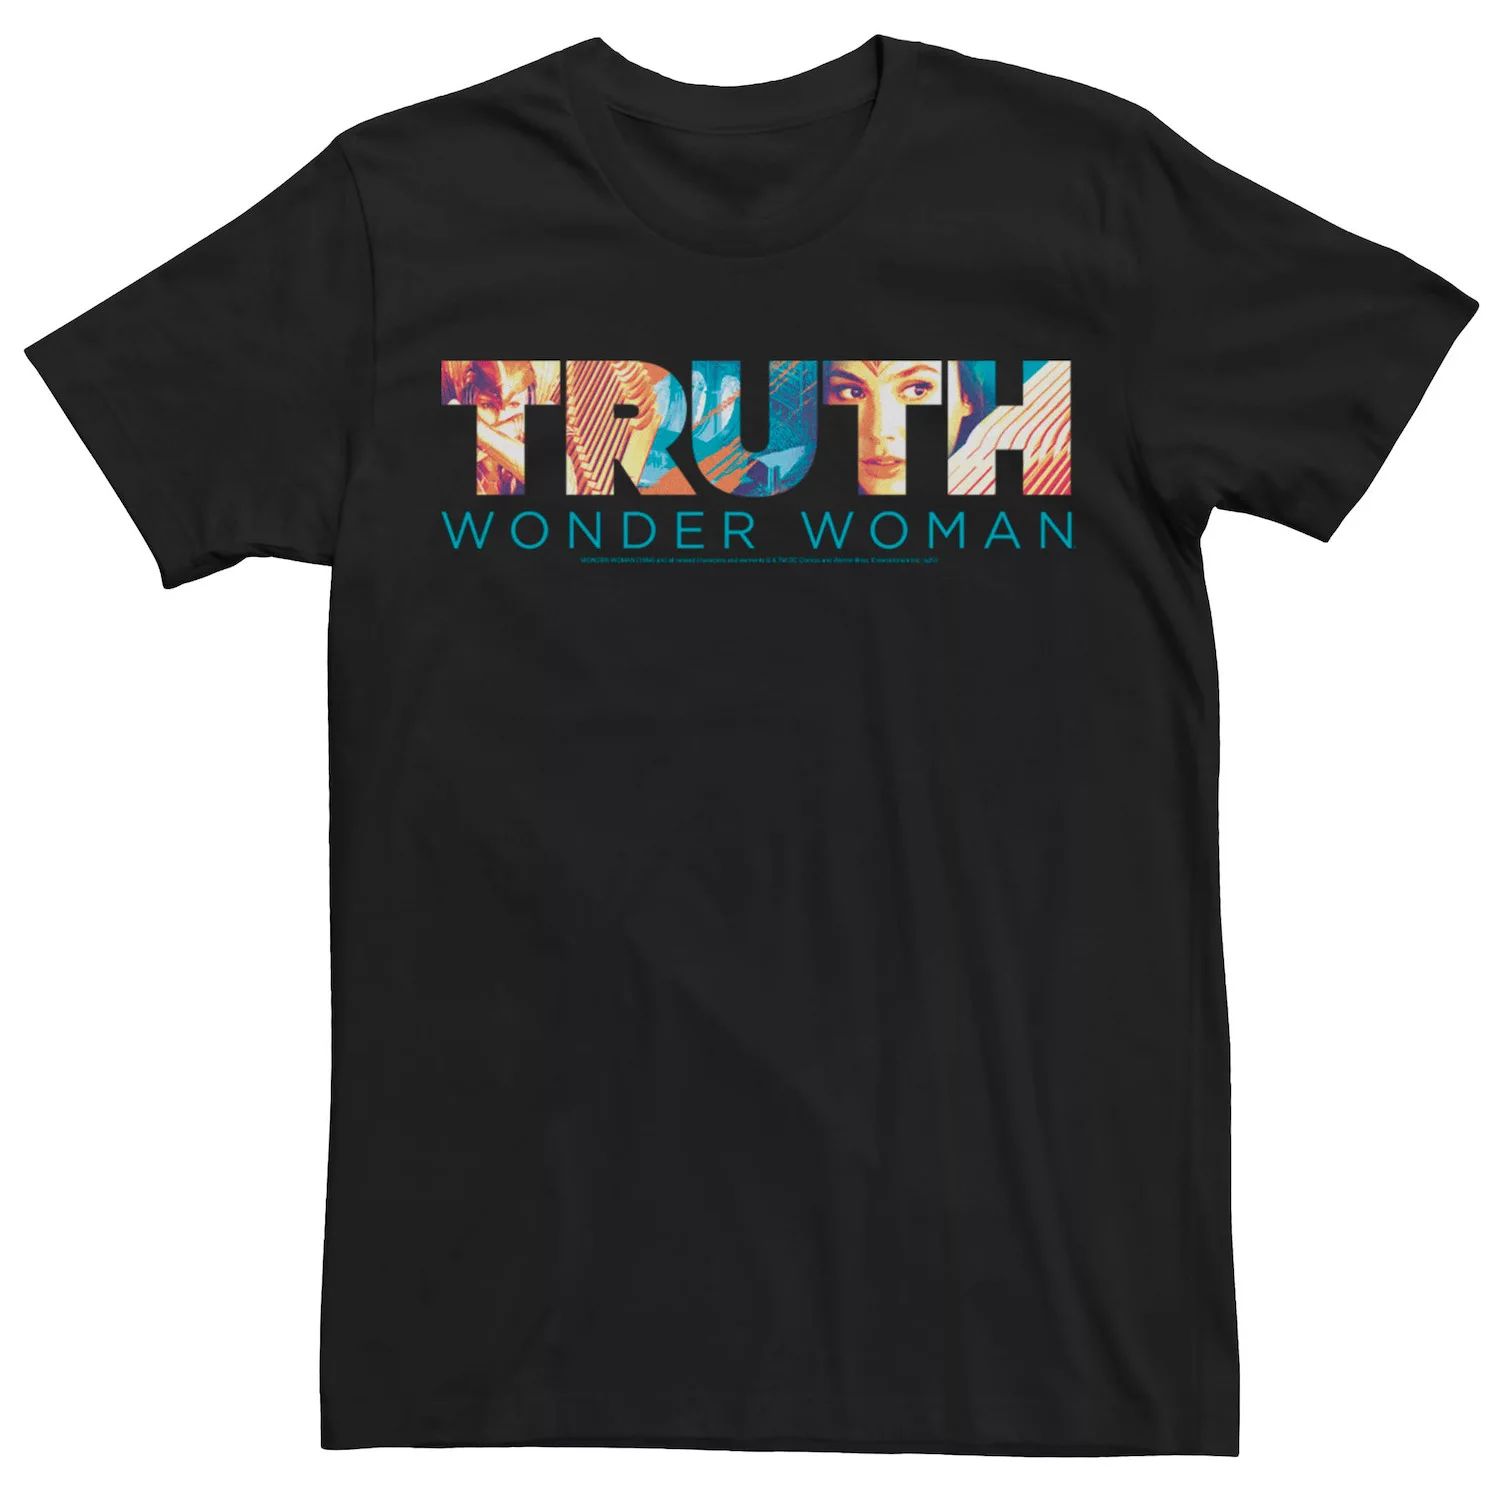 Мужская футболка Wonder Woman Truth с текстовым наполнением DC Comics